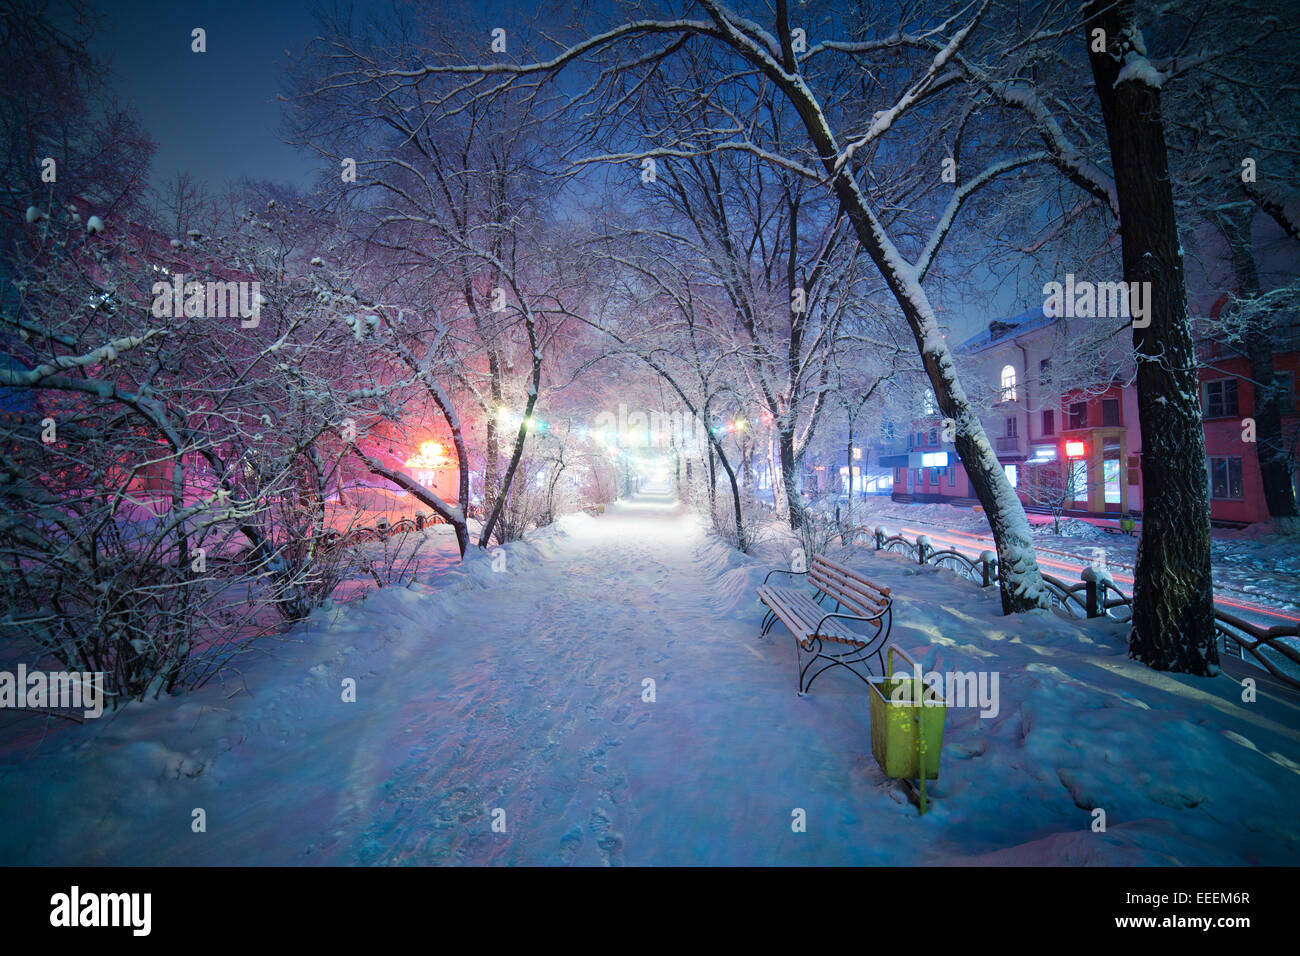 Stadt Winterlandschaft, Nacht-Gasse mit einer Bank, magische Atmosphäre. Abakan, Sibirien, Russland. Stockfoto